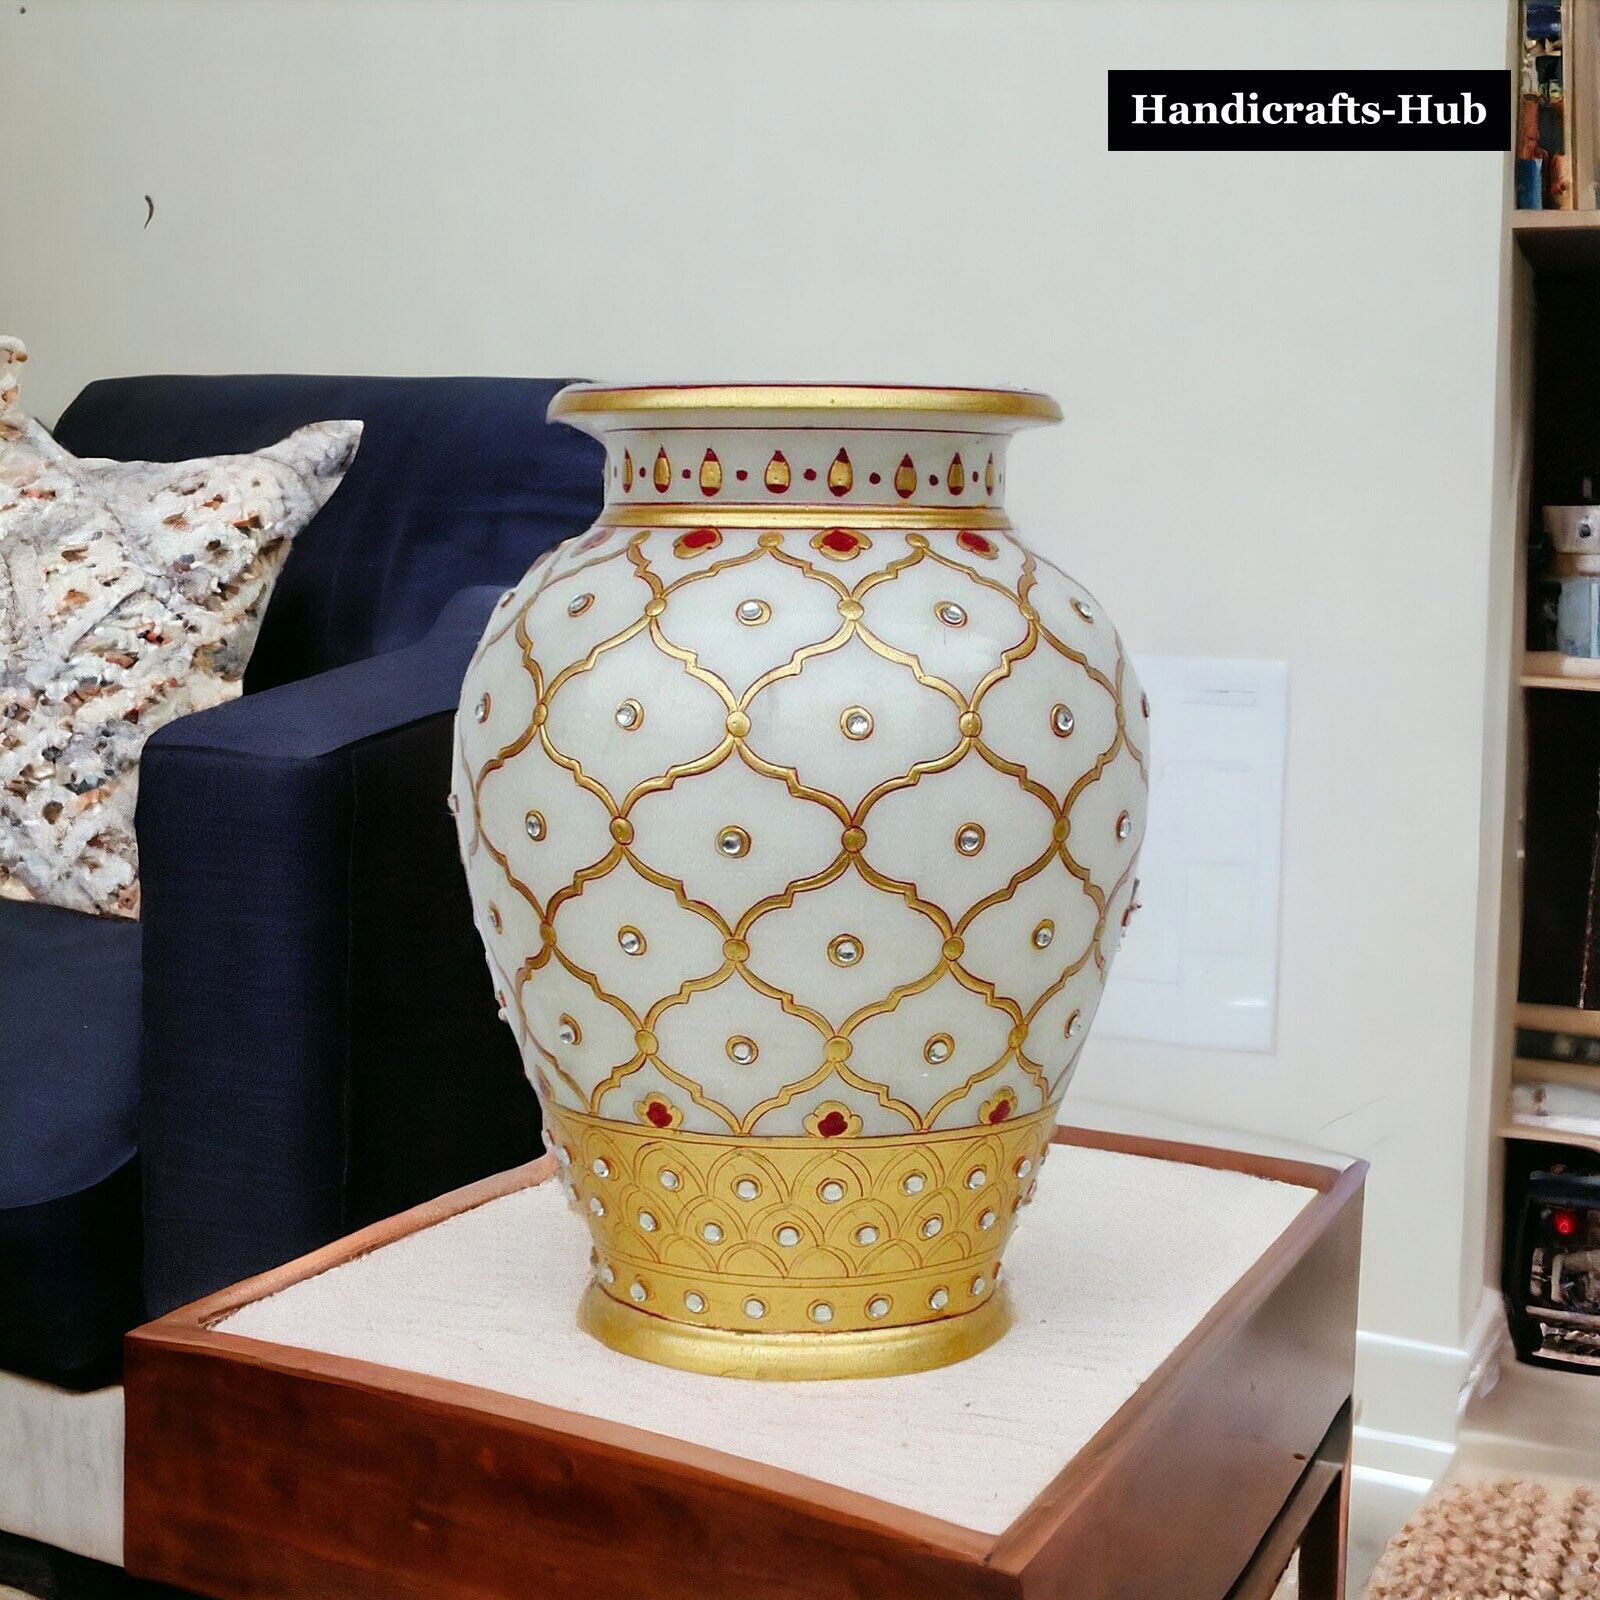 Marble Decorative Flower Vase Pot Home Decor Accent Souvenirs Art Gift Interior